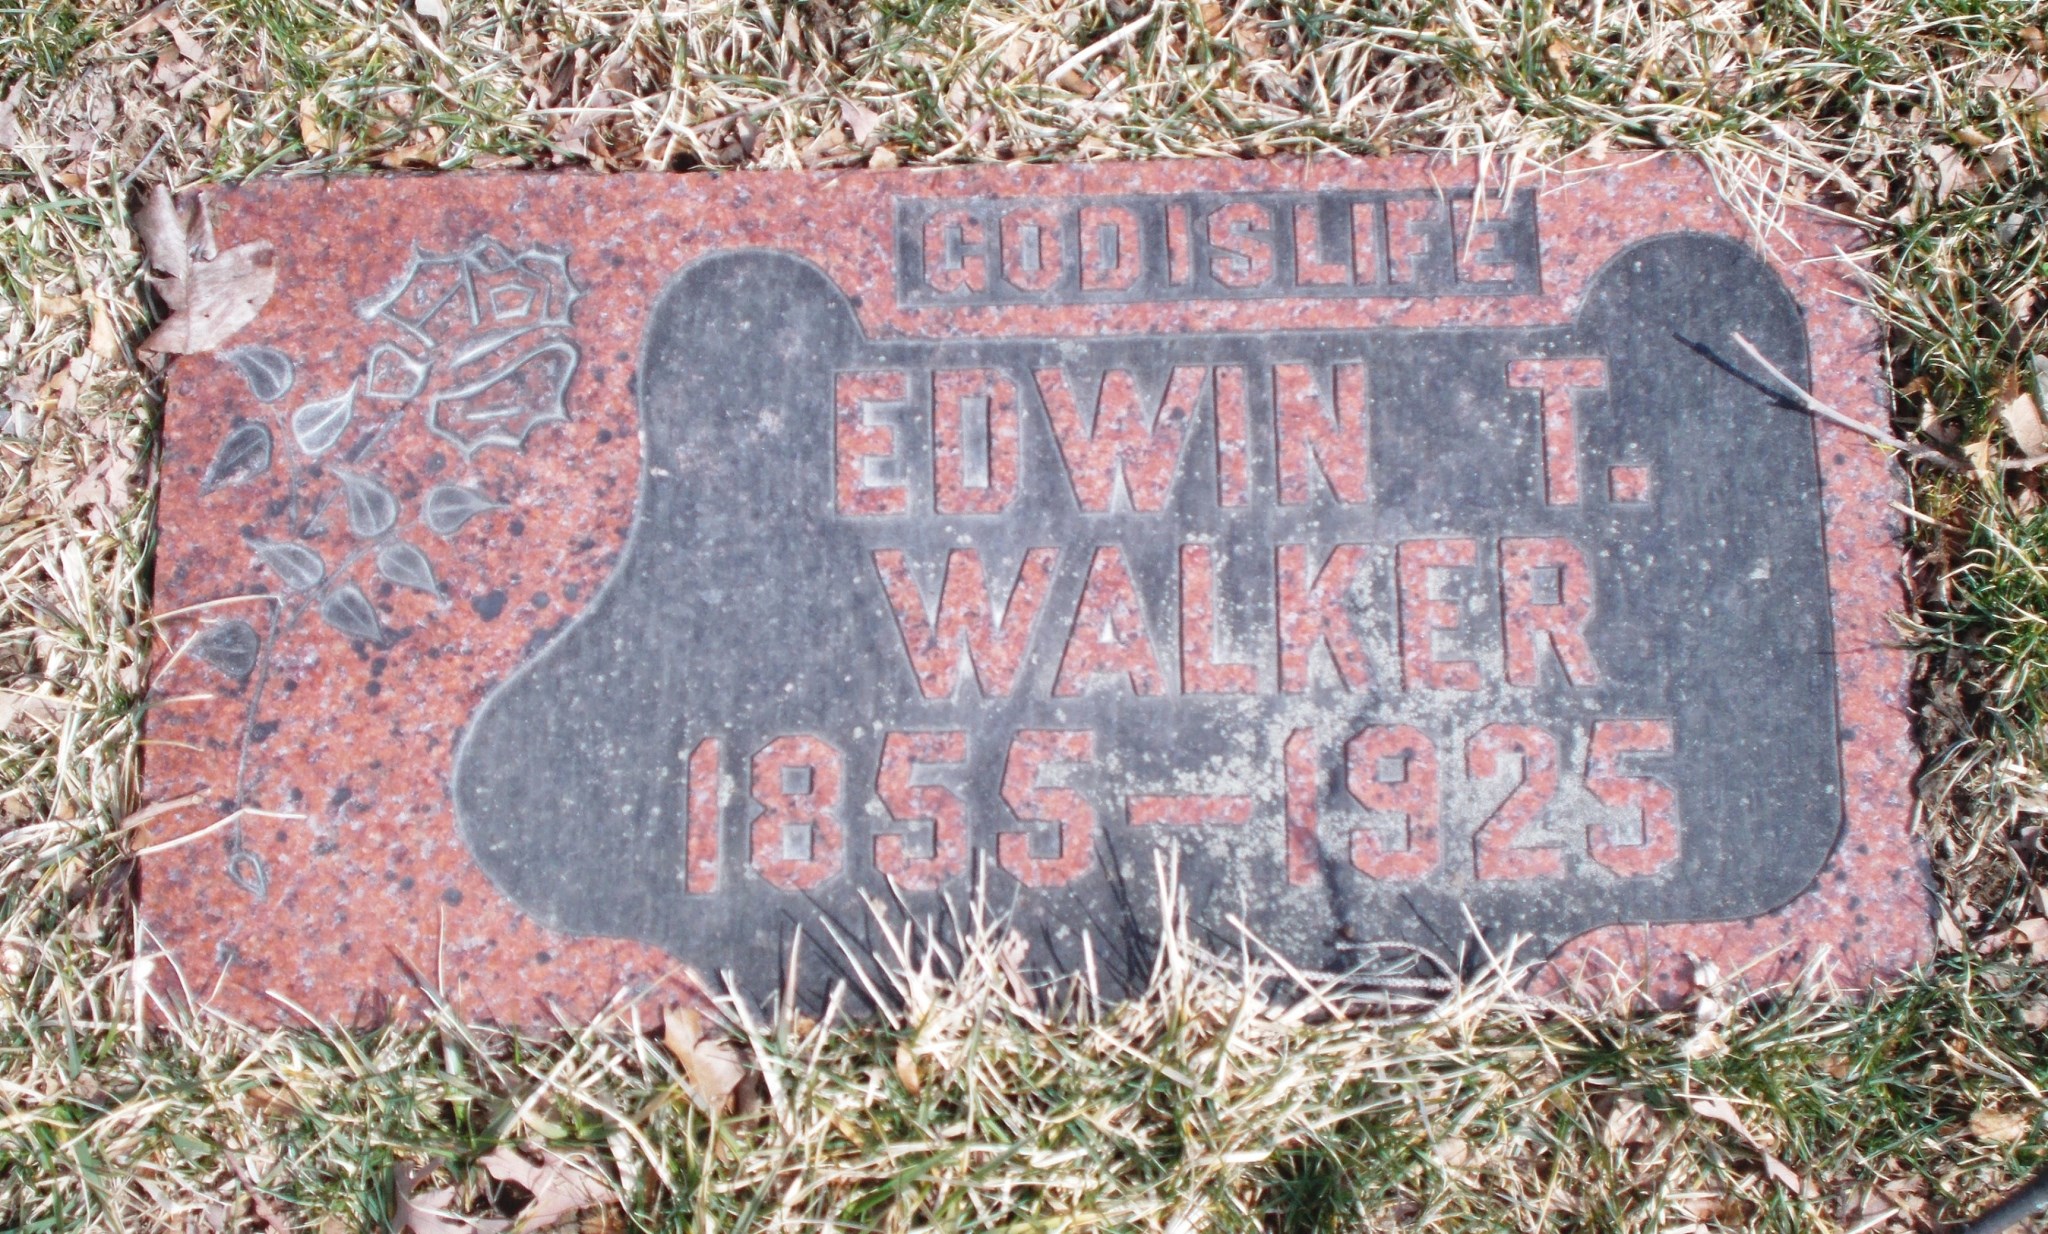 Edwin T Walker